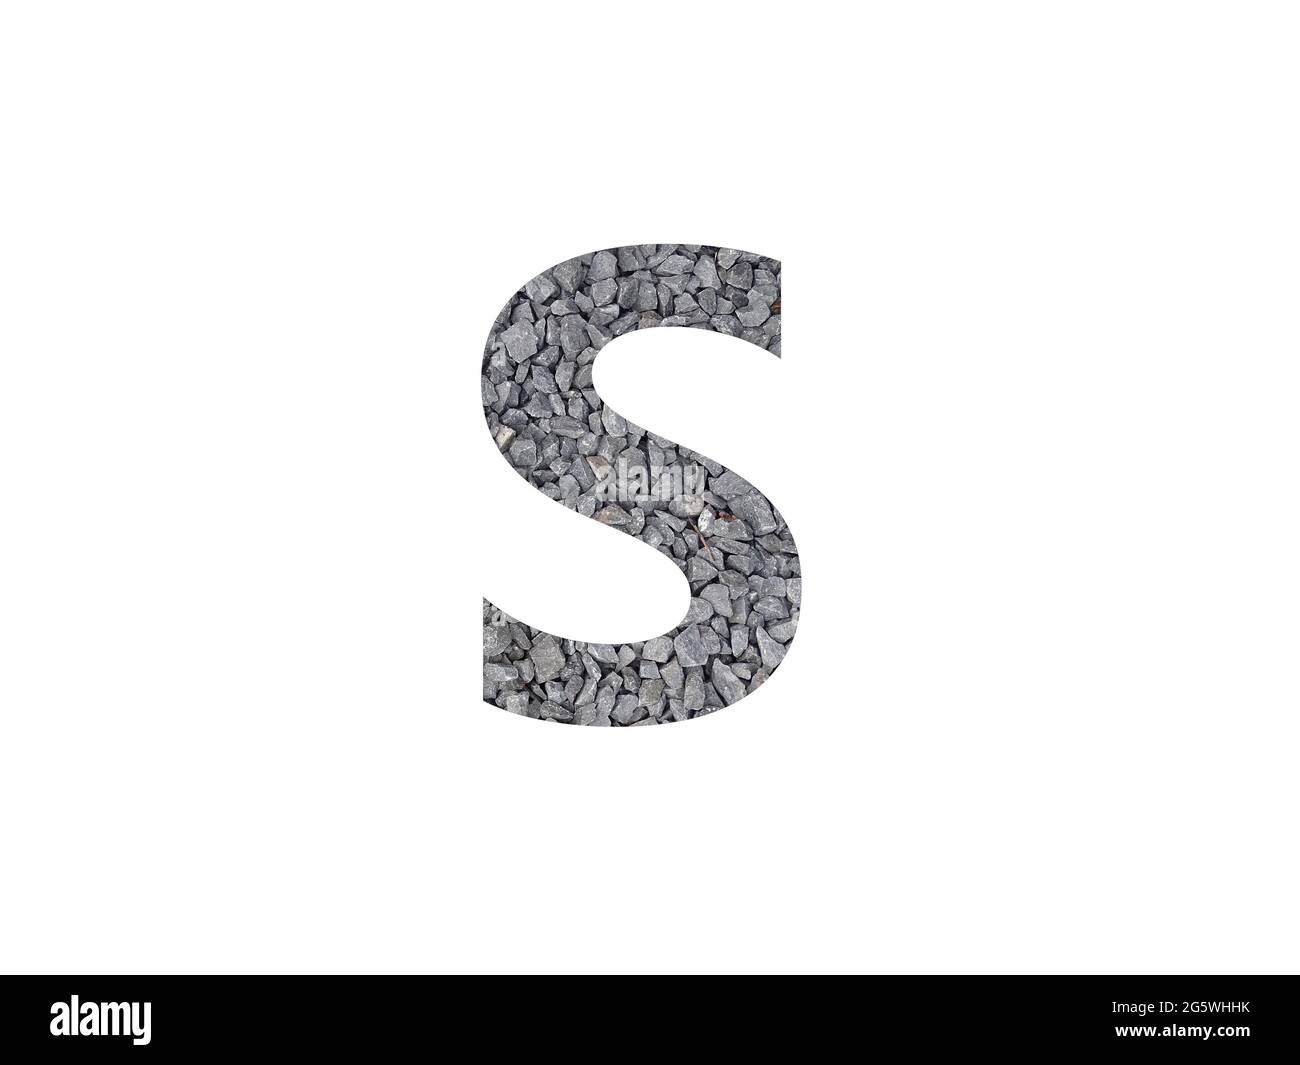 Lettre S de l'alphabet faite de gravier gris isolé sur fond blanc Banque D'Images